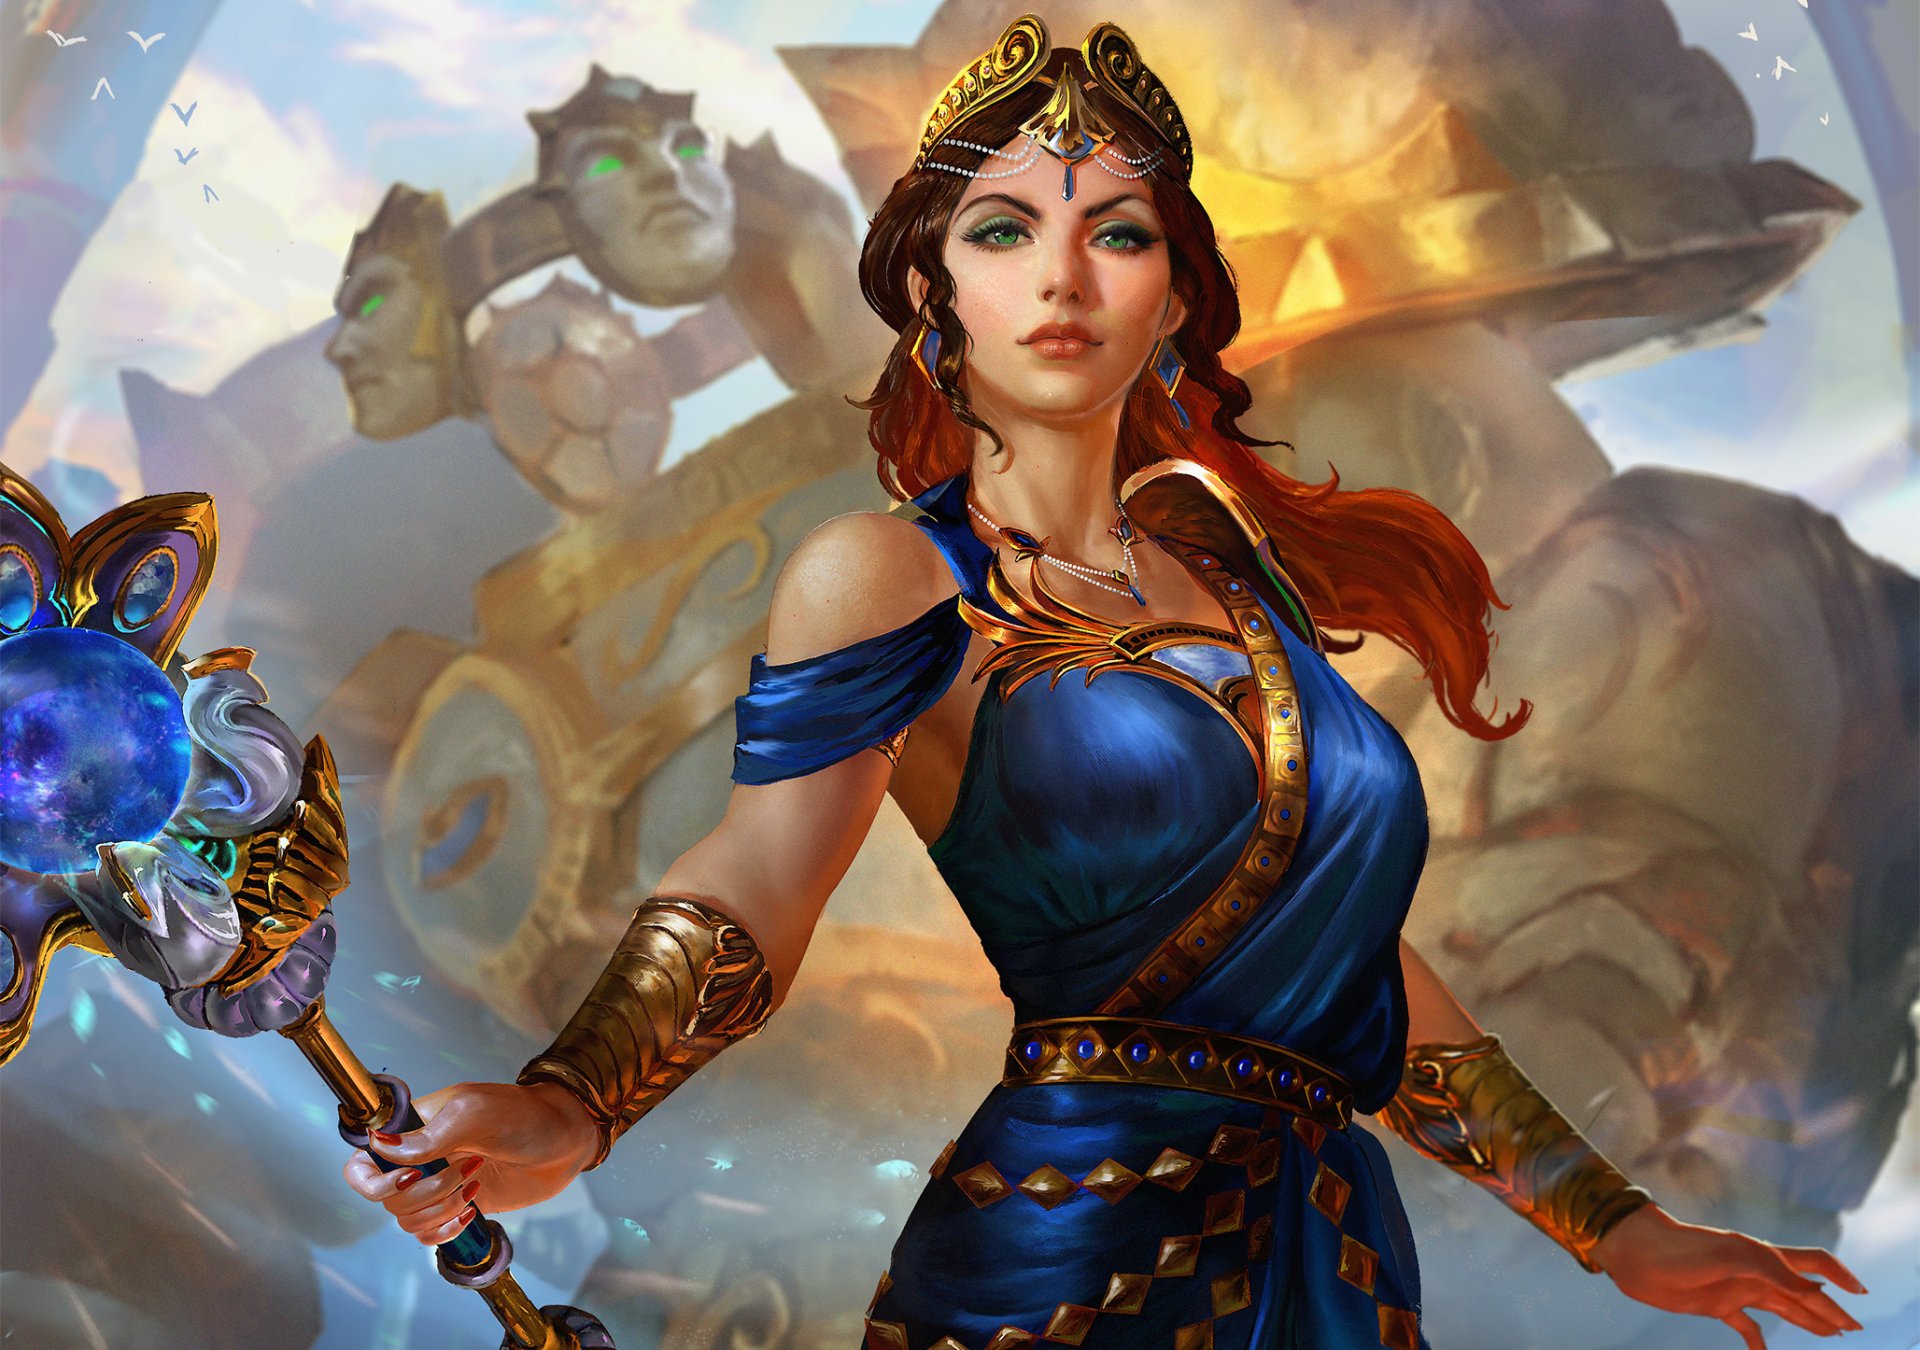 Woman Warrior Queen HD Wallpaper Background Image